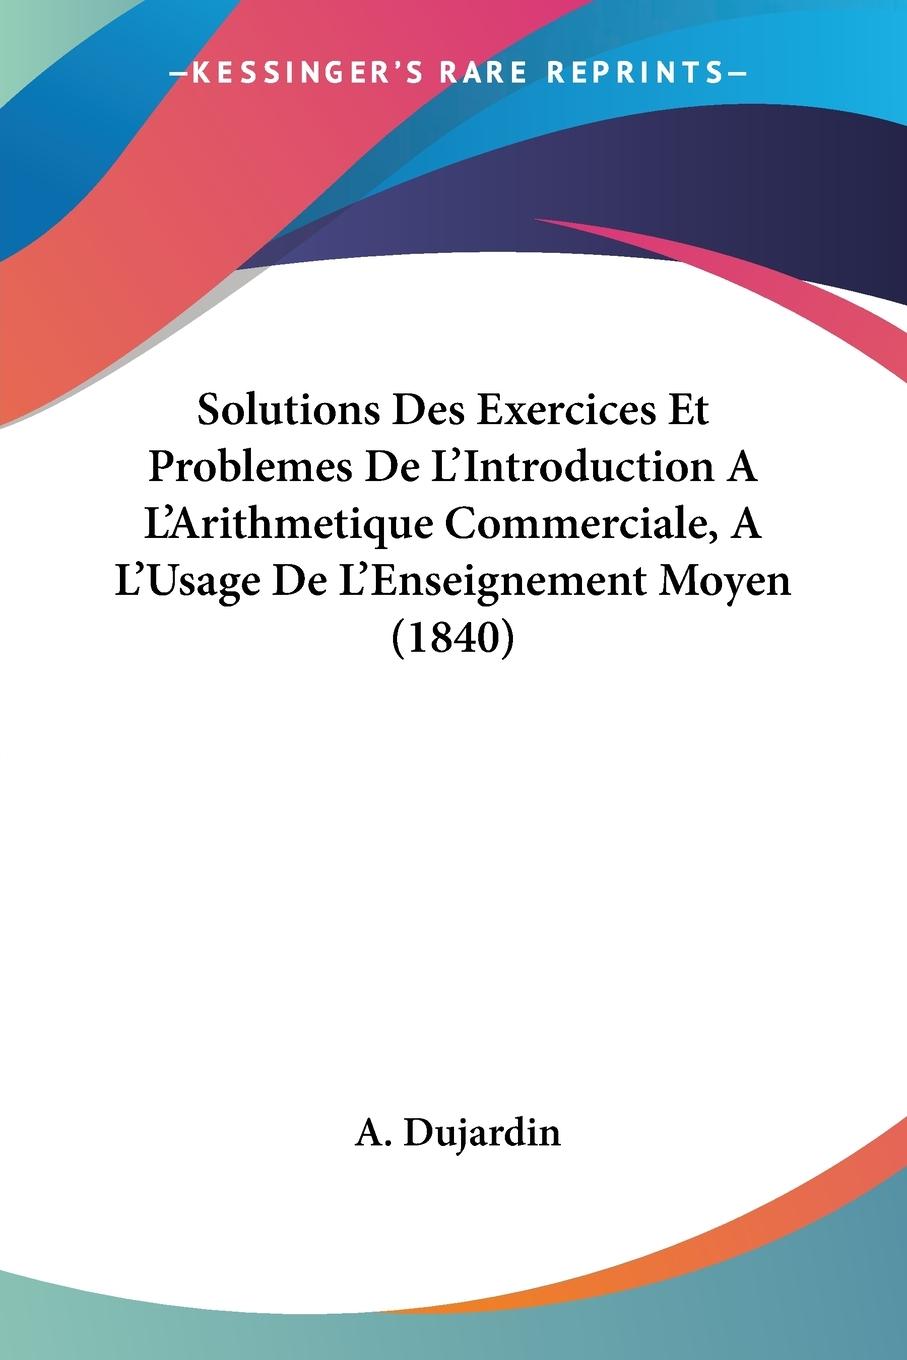 Solutions Des Exercices Et Problemes De L Introduction A L Arithmetique Commerciale, A L Usage De L Enseignement Moyen (1840) - Dujardin, A.